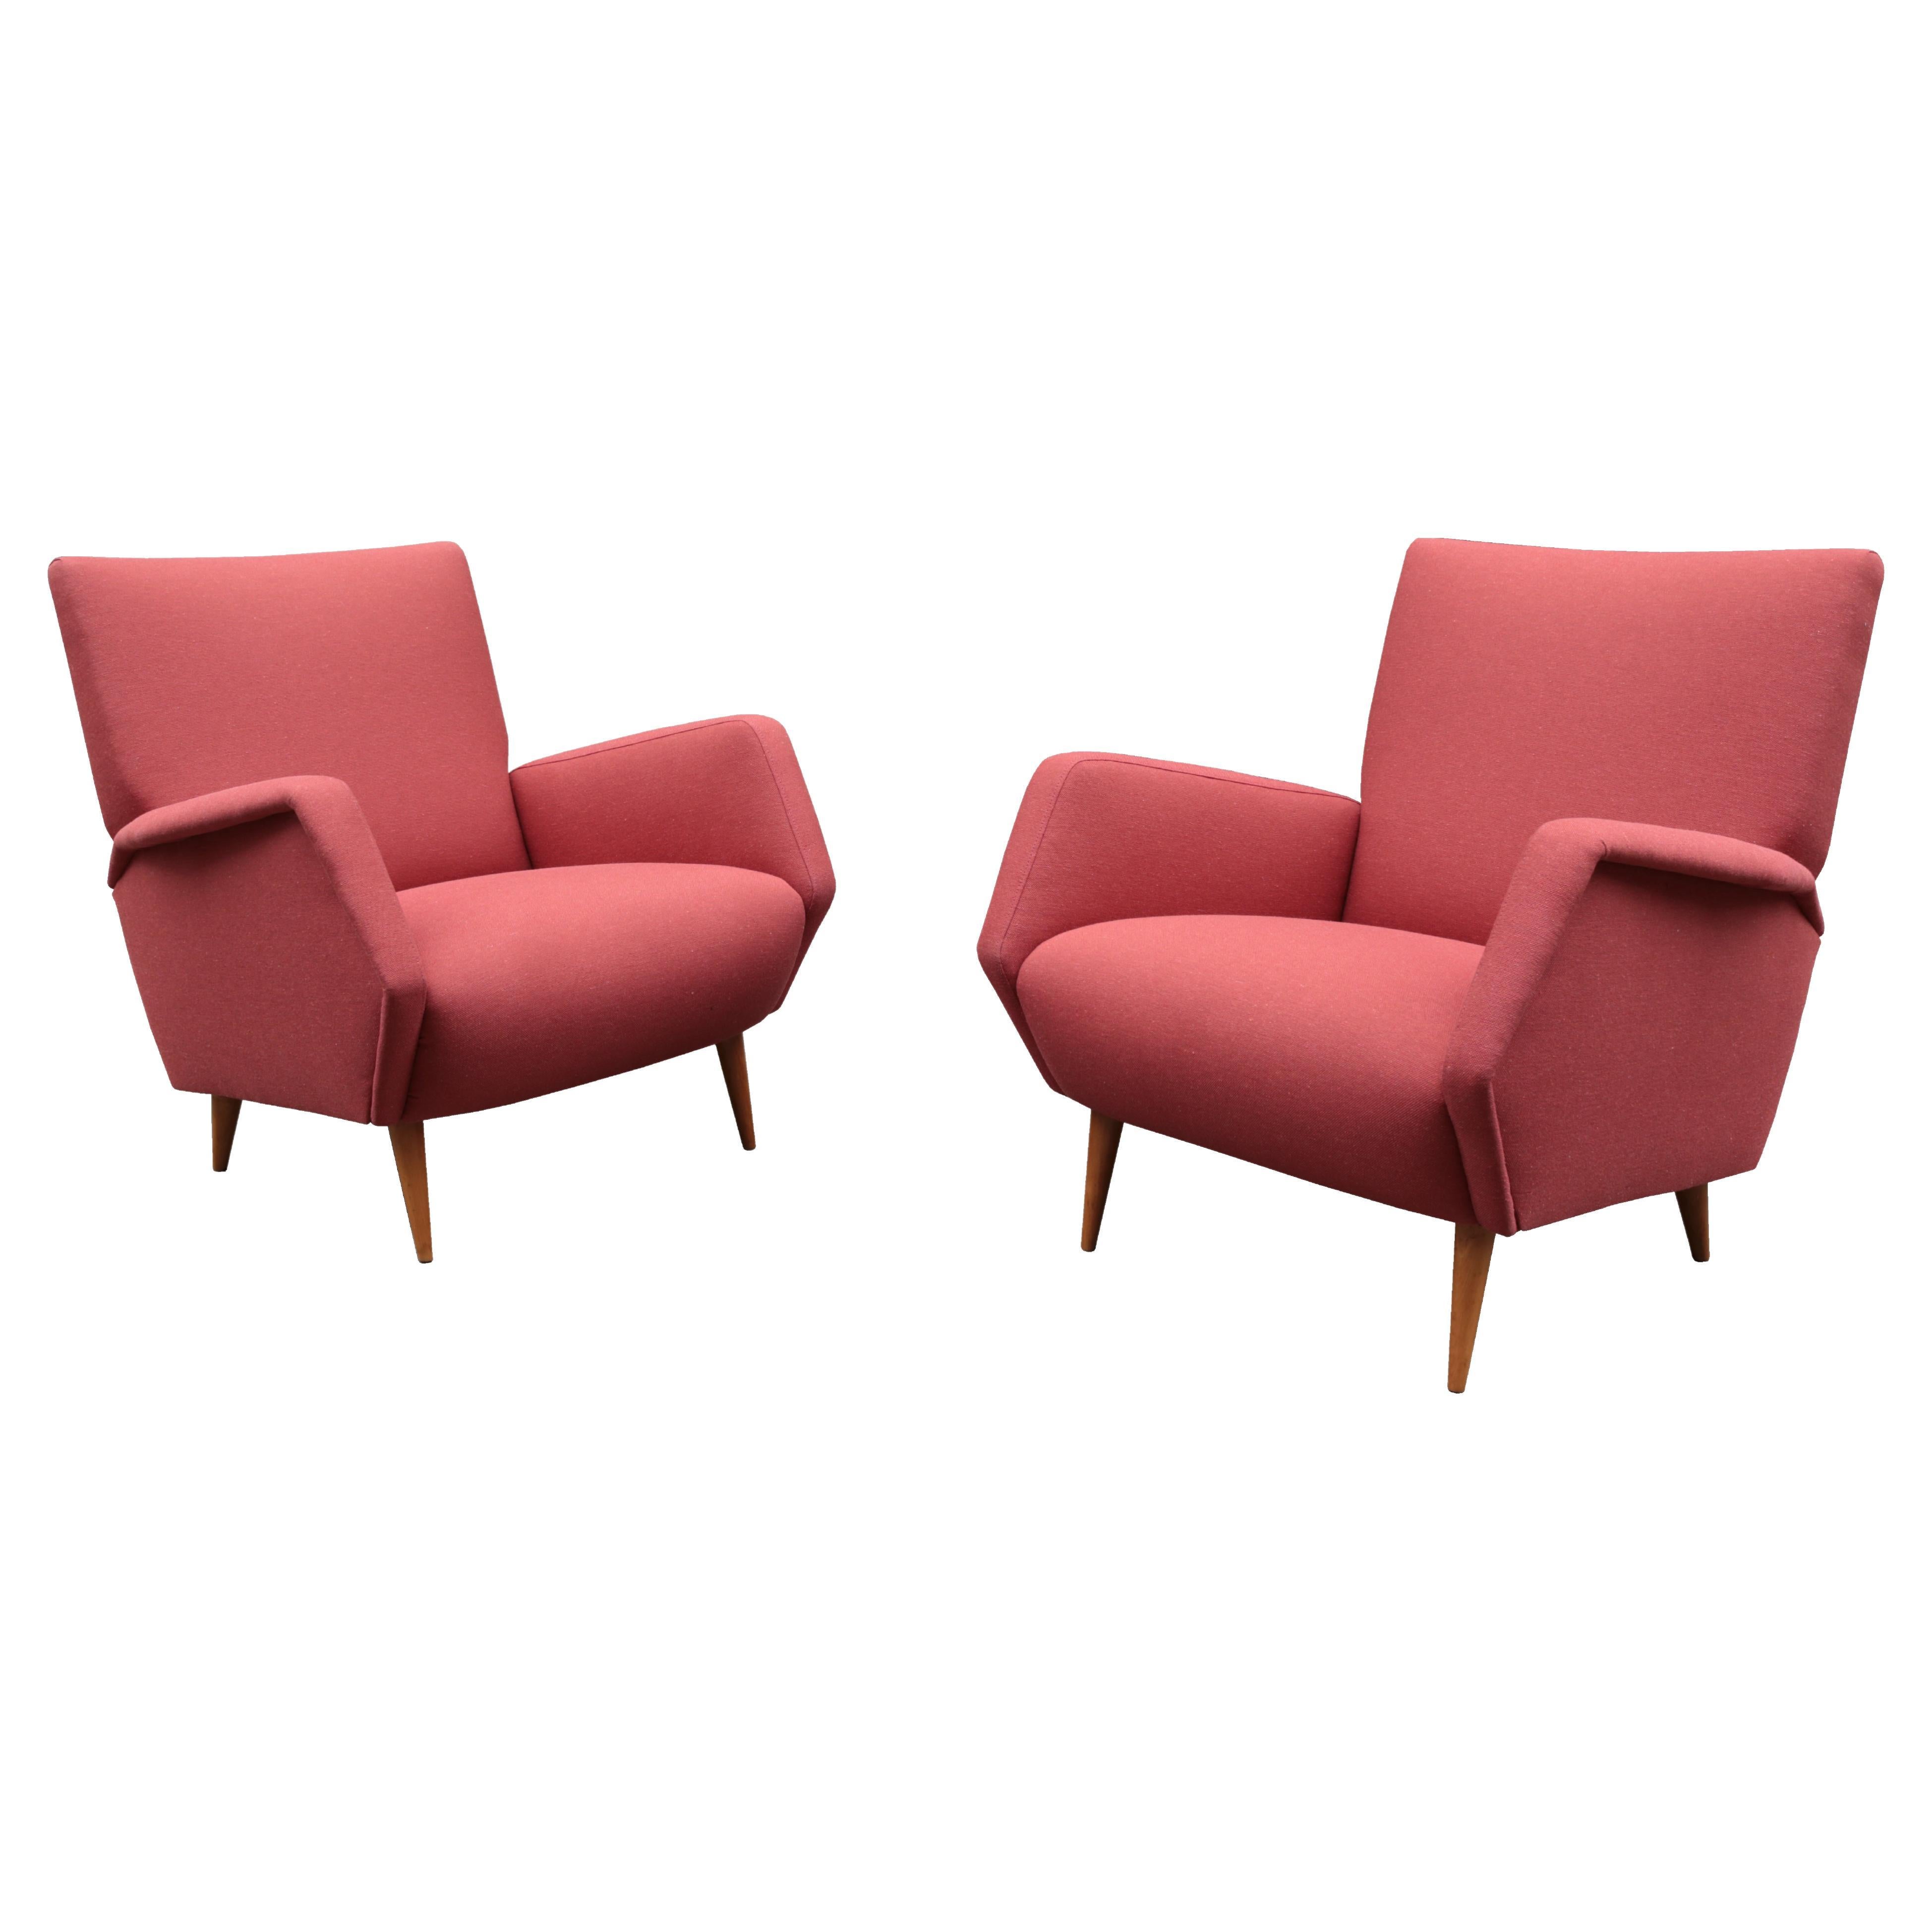 Ein Paar Cassina-Sessel, entworfen von Gio Ponti